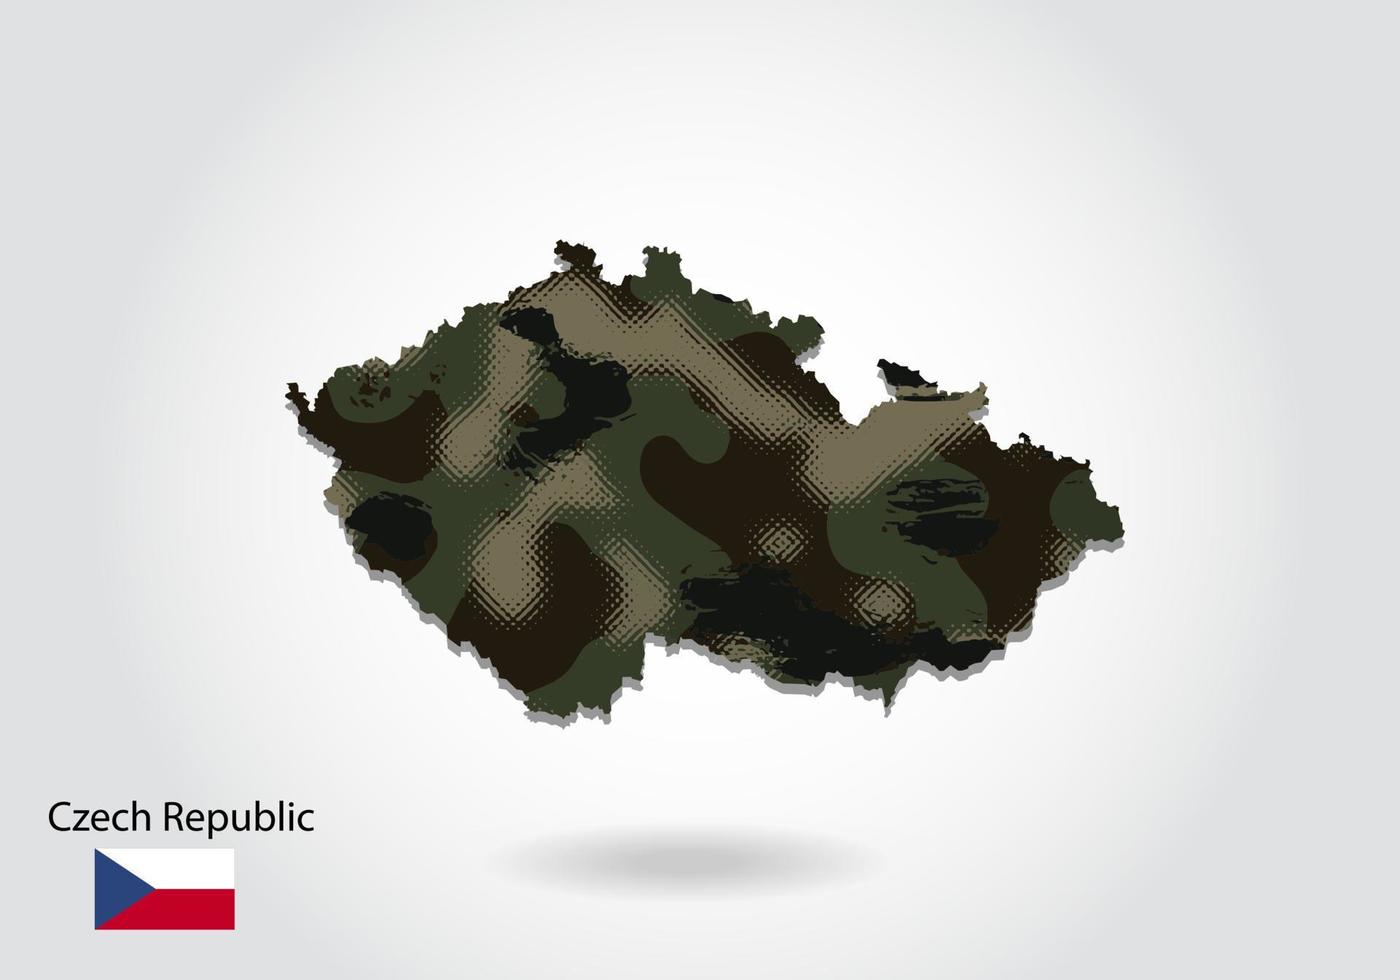 mapa de la república checa con patrón de camuflaje, bosque - textura verde en el mapa. concepto militar para ejército, soldado y guerra. escudo de armas, bandera. vector